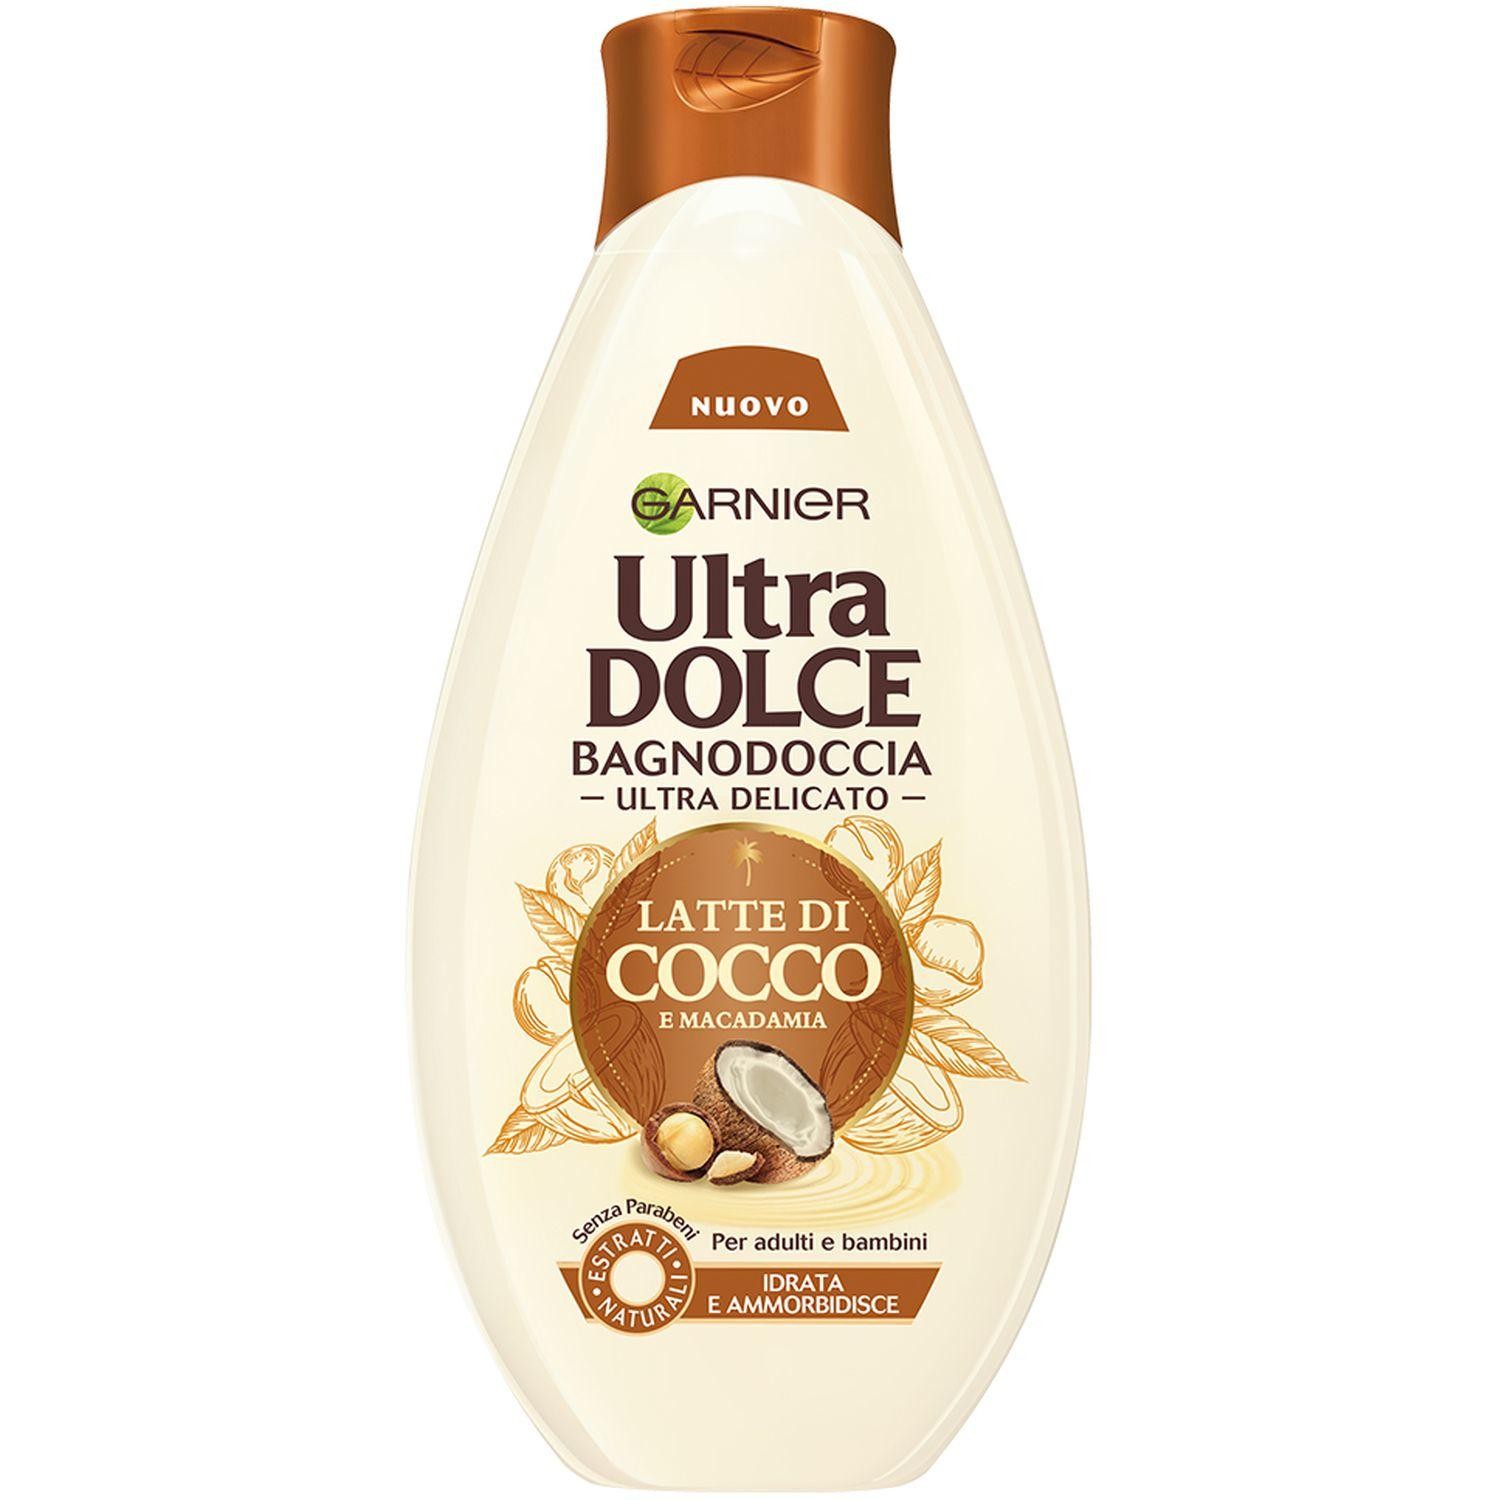 Garnier Ultra Dolce Latte di Cocco e Macadamia shower gel 500ml